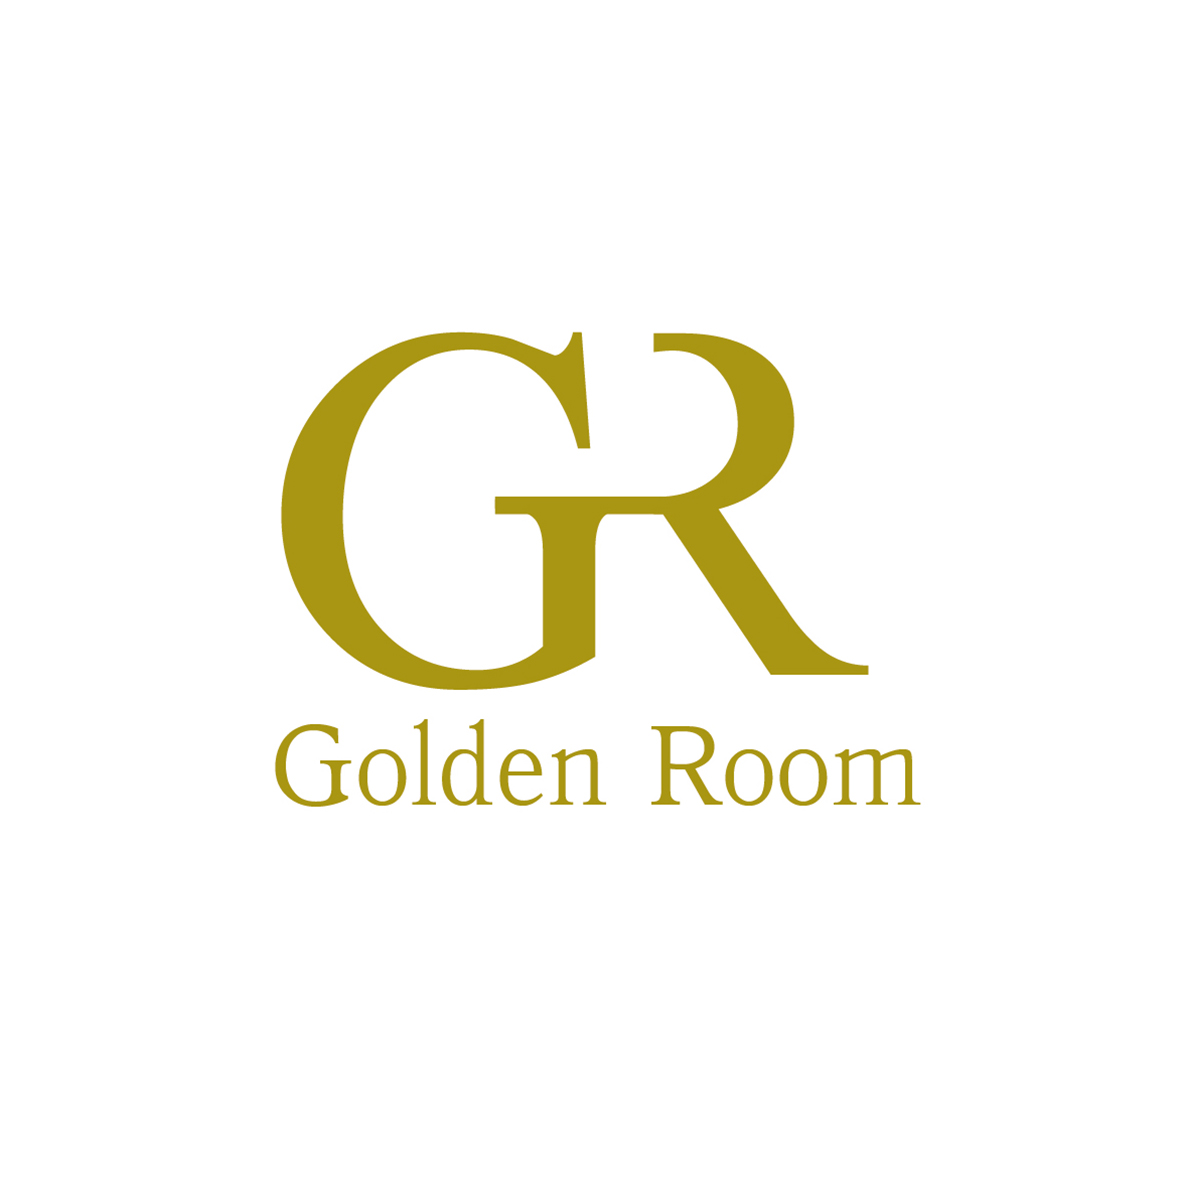 Golden Room